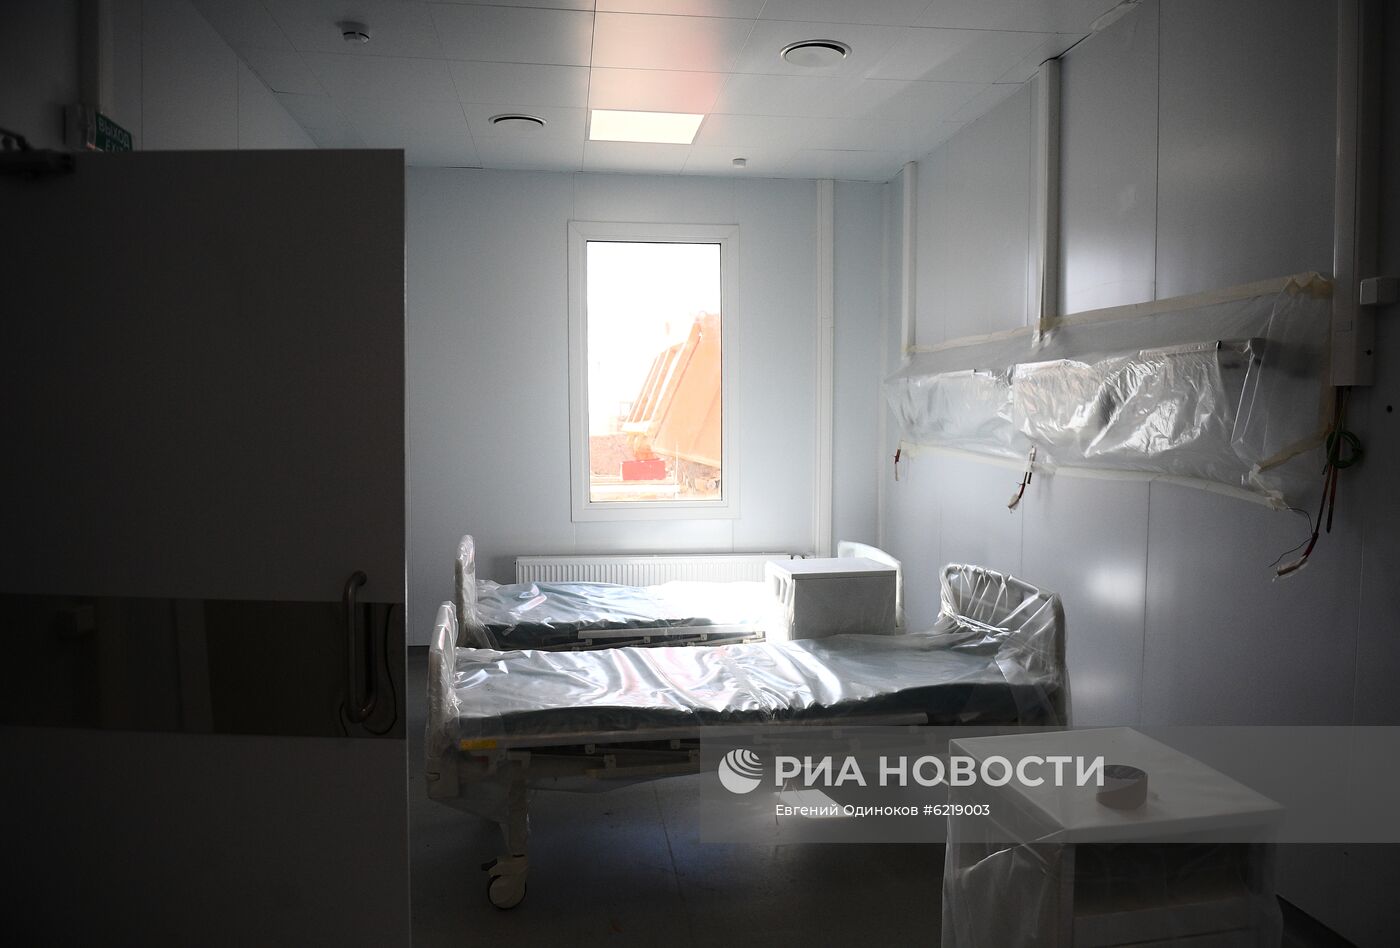 Строительство инфекционного центра в Новой Москве